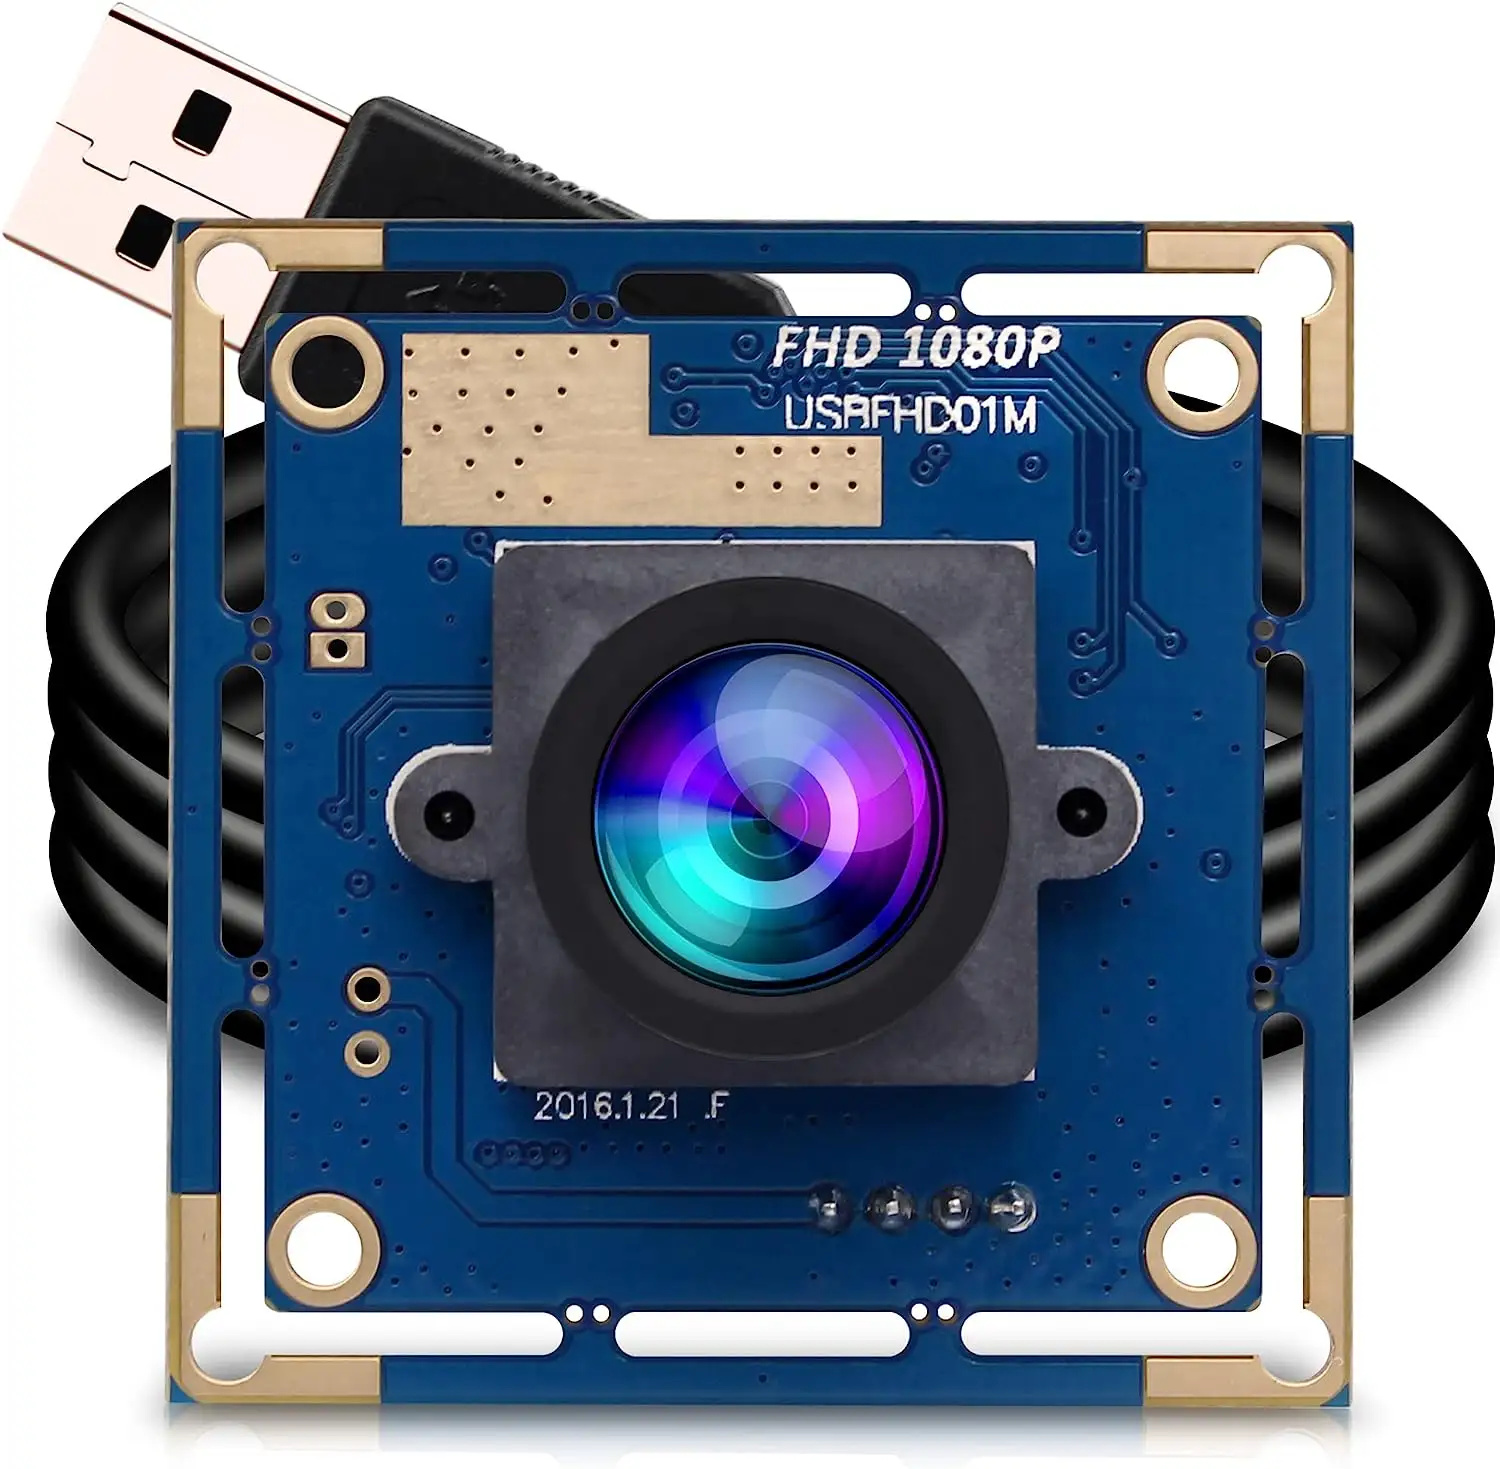 ELP CMOS CMOS yüksek hızlı Full HD 1080P USB kamera modülü 2MP Webcam akıllı ev güvenlik için 2.1mm geniş açı Lens ile